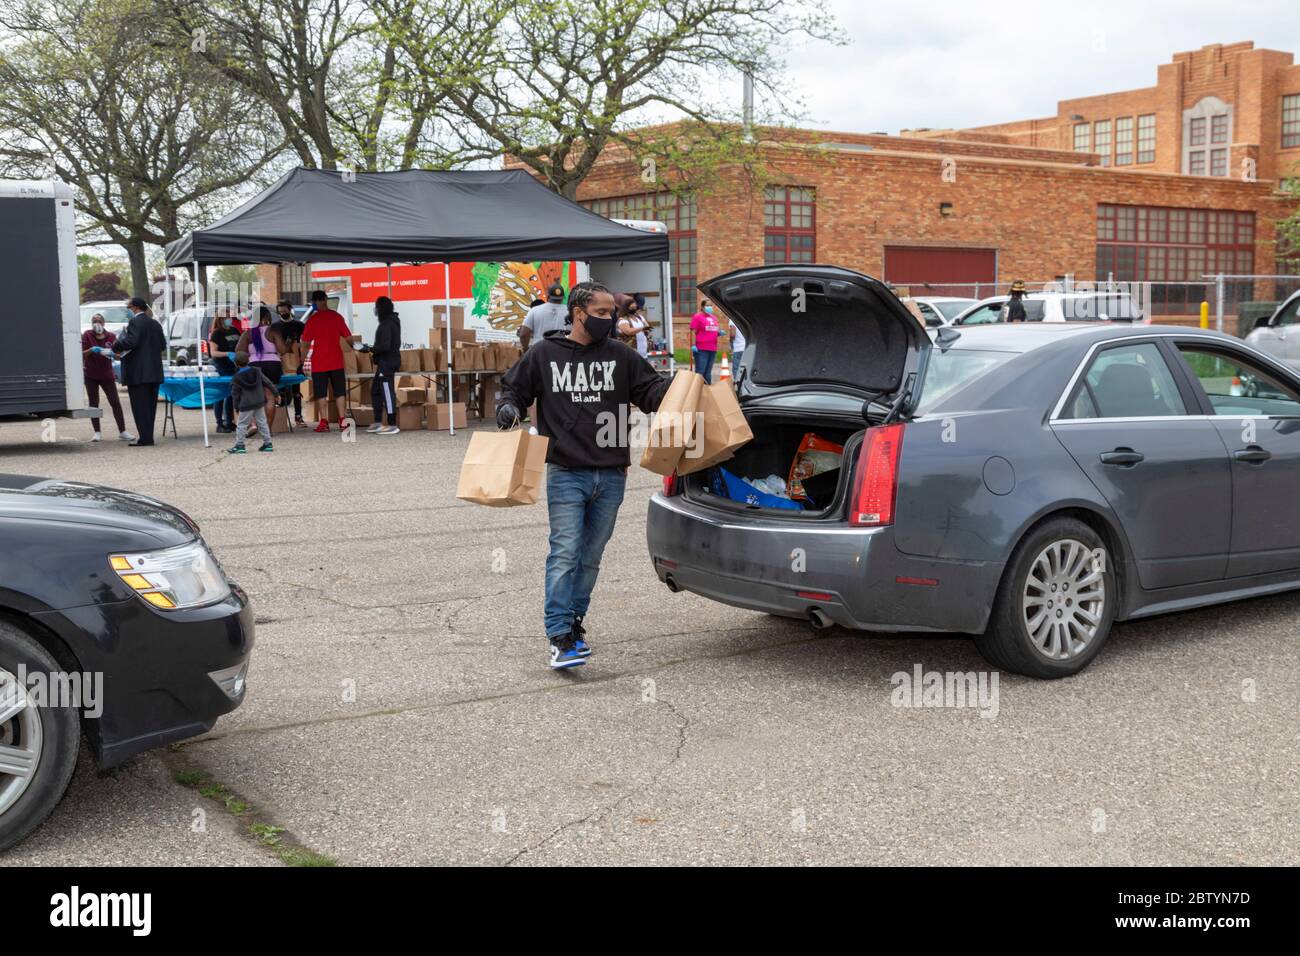 Detroit, Michigan - les bénévoles distribuent gratuitement de la nourriture dans un quartier à faible revenu pendant la pandémie du coronavirus. La distribution était organisée par DO Banque D'Images